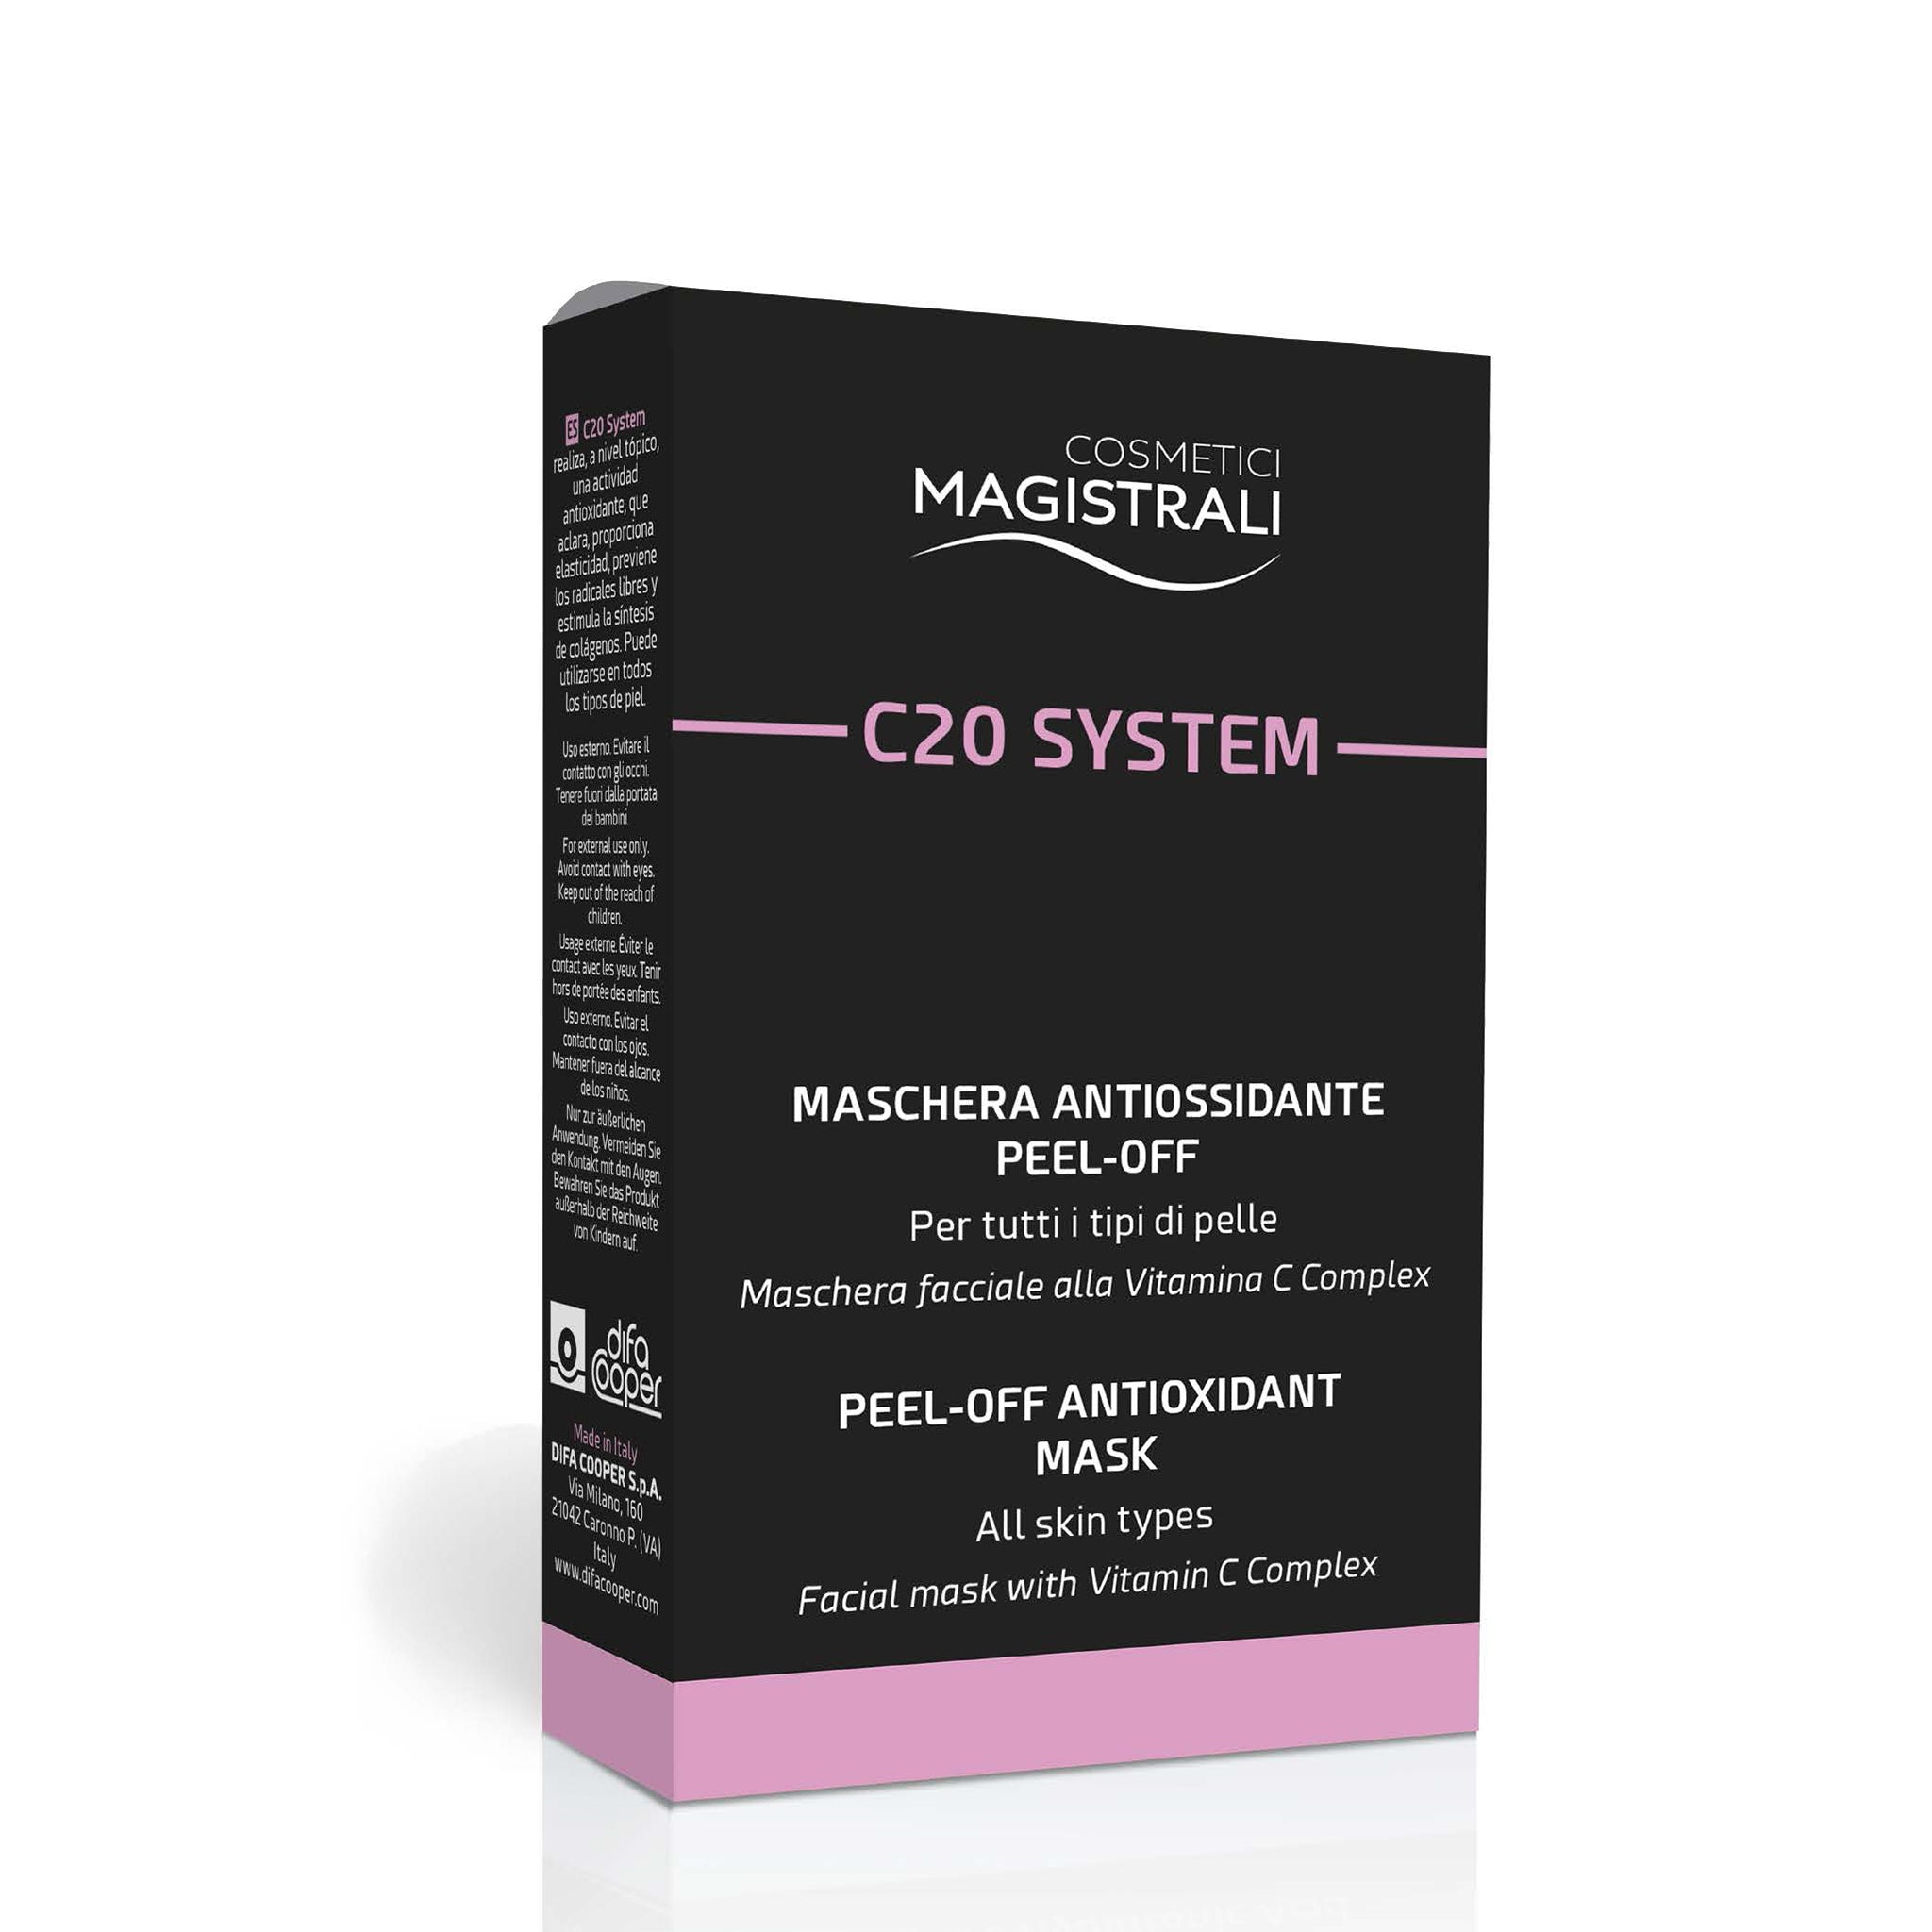 Cosmetici Magistrali C20 System Maschera 5 Buste – faol